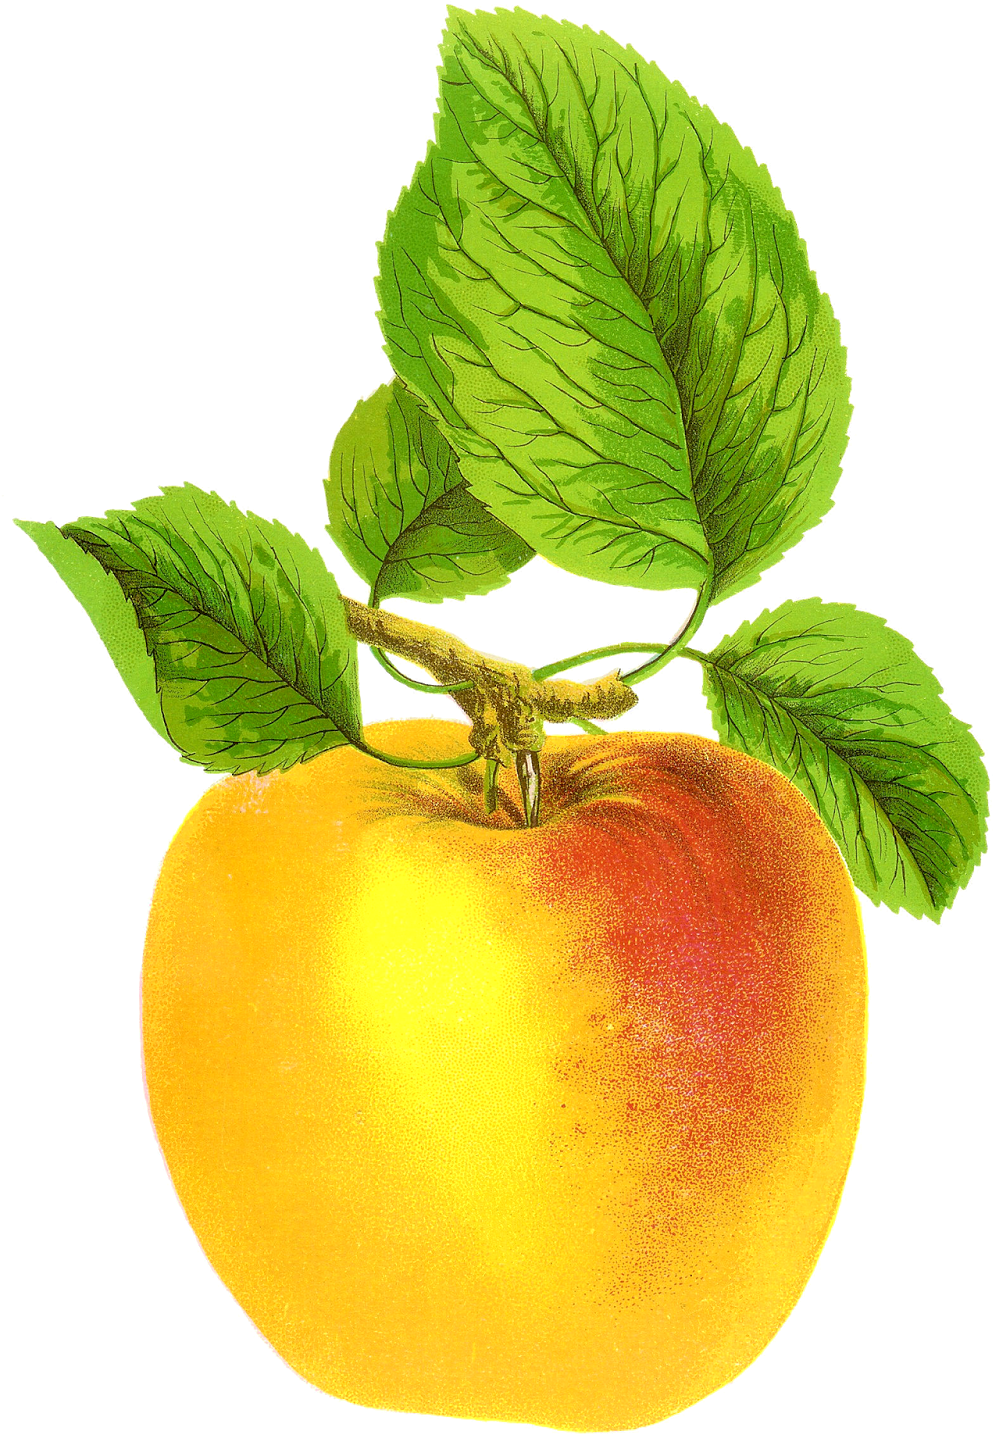 Free Digital Fruit Images Vintage Clip Art Apple Grime's - Vintage Apple Free (1117x1600)